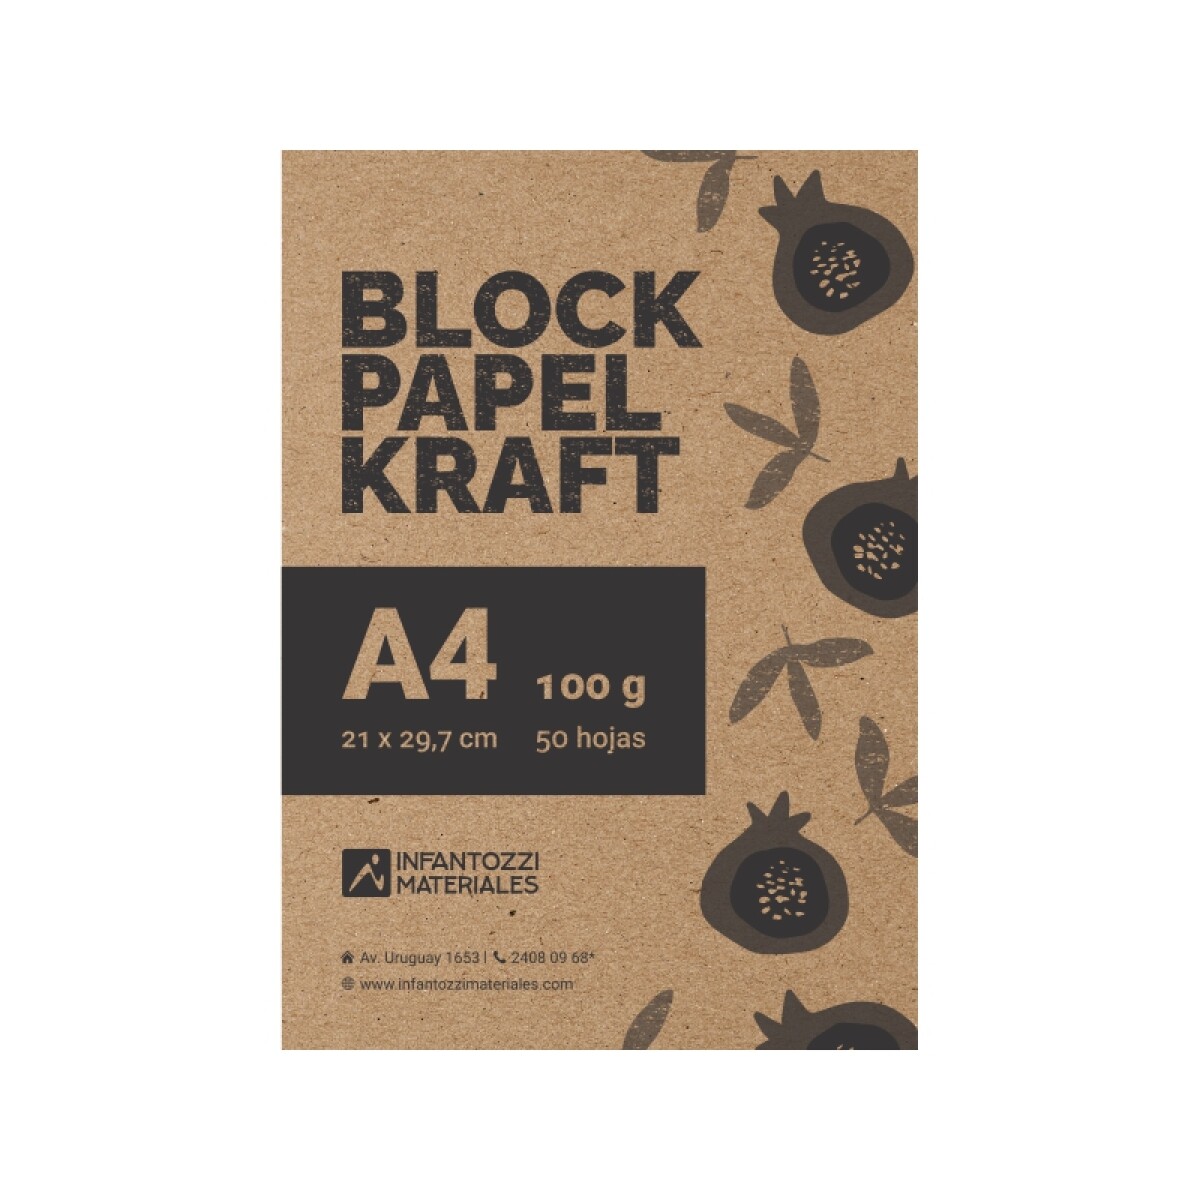 Block kraft - A4 - 50 hojas 